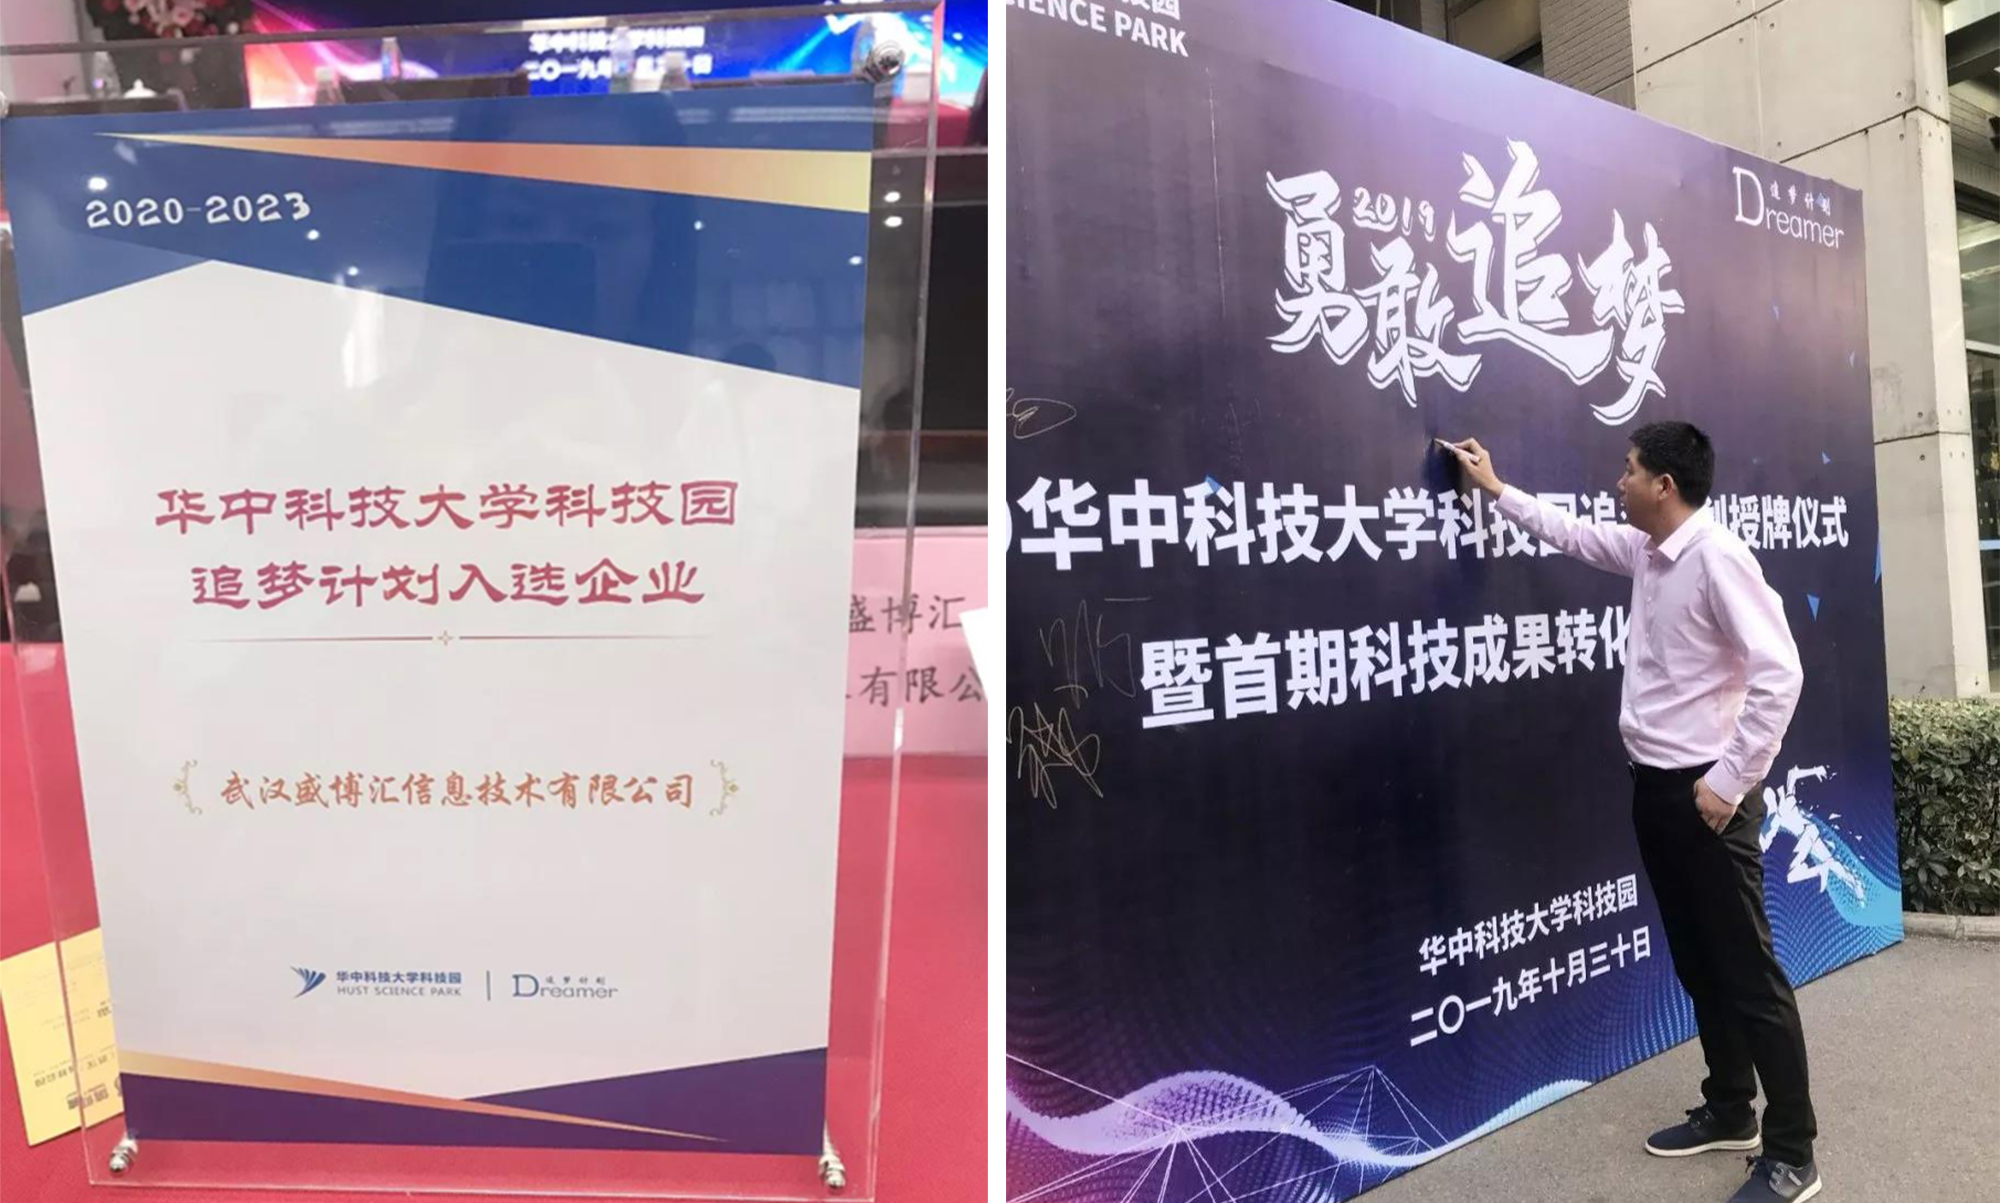 我司荣获“2019华中科技大学科技园追梦计划”企业授牌